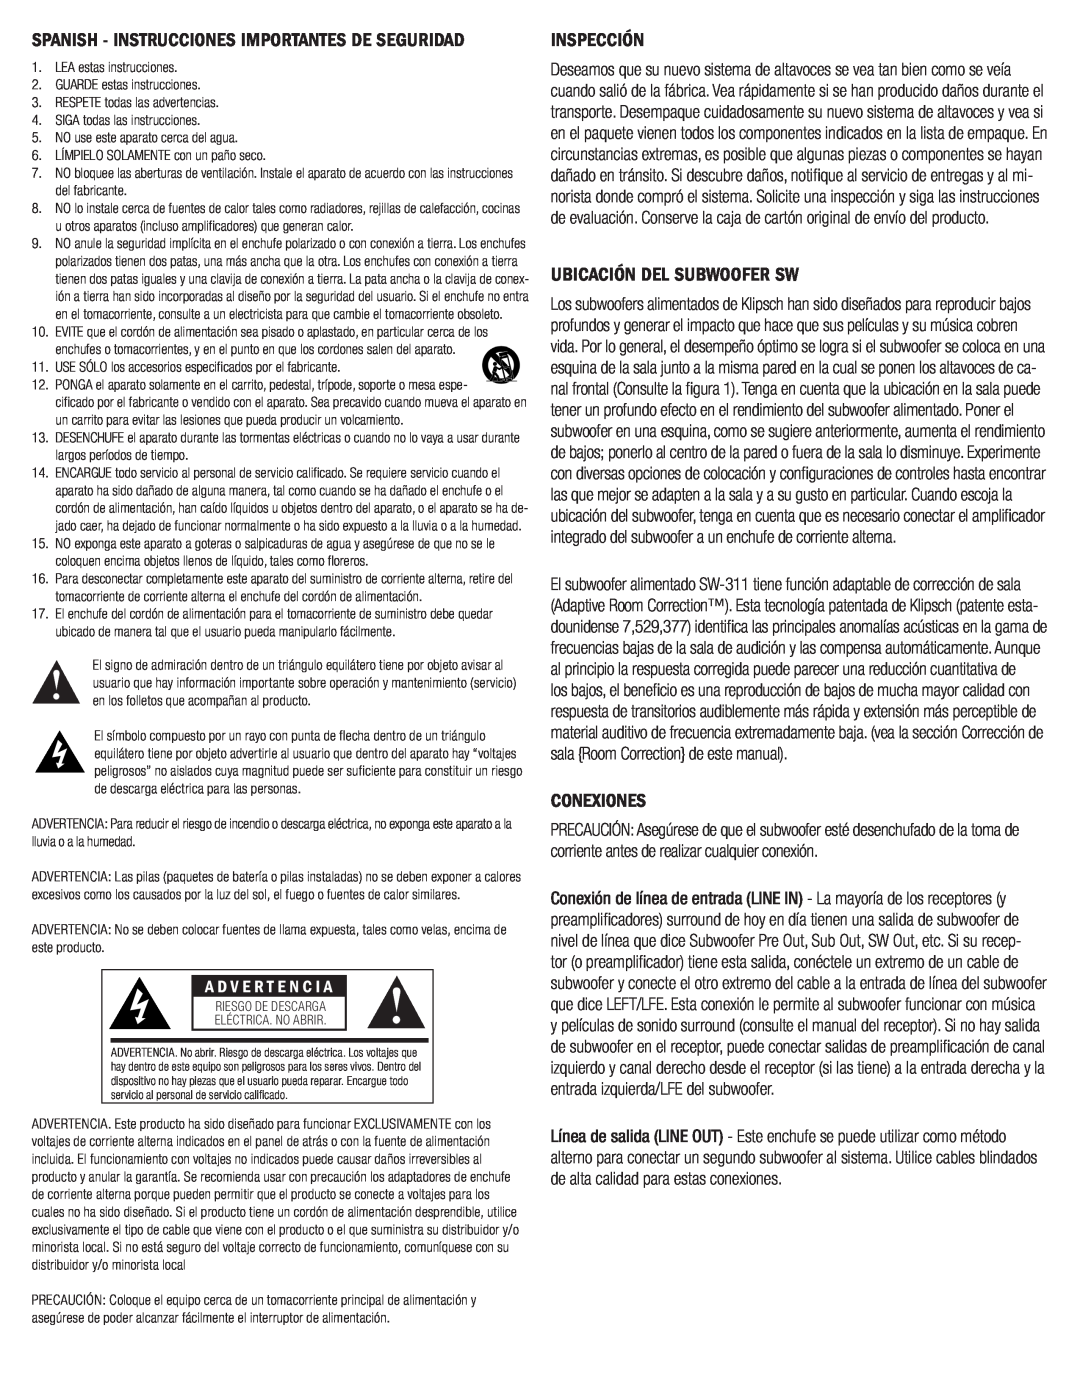 Klipsch SW-311 Inspección, Ubicación Del Subwoofer Sw, Conexiones, Spanish - Instrucciones Importantes De Seguridad 